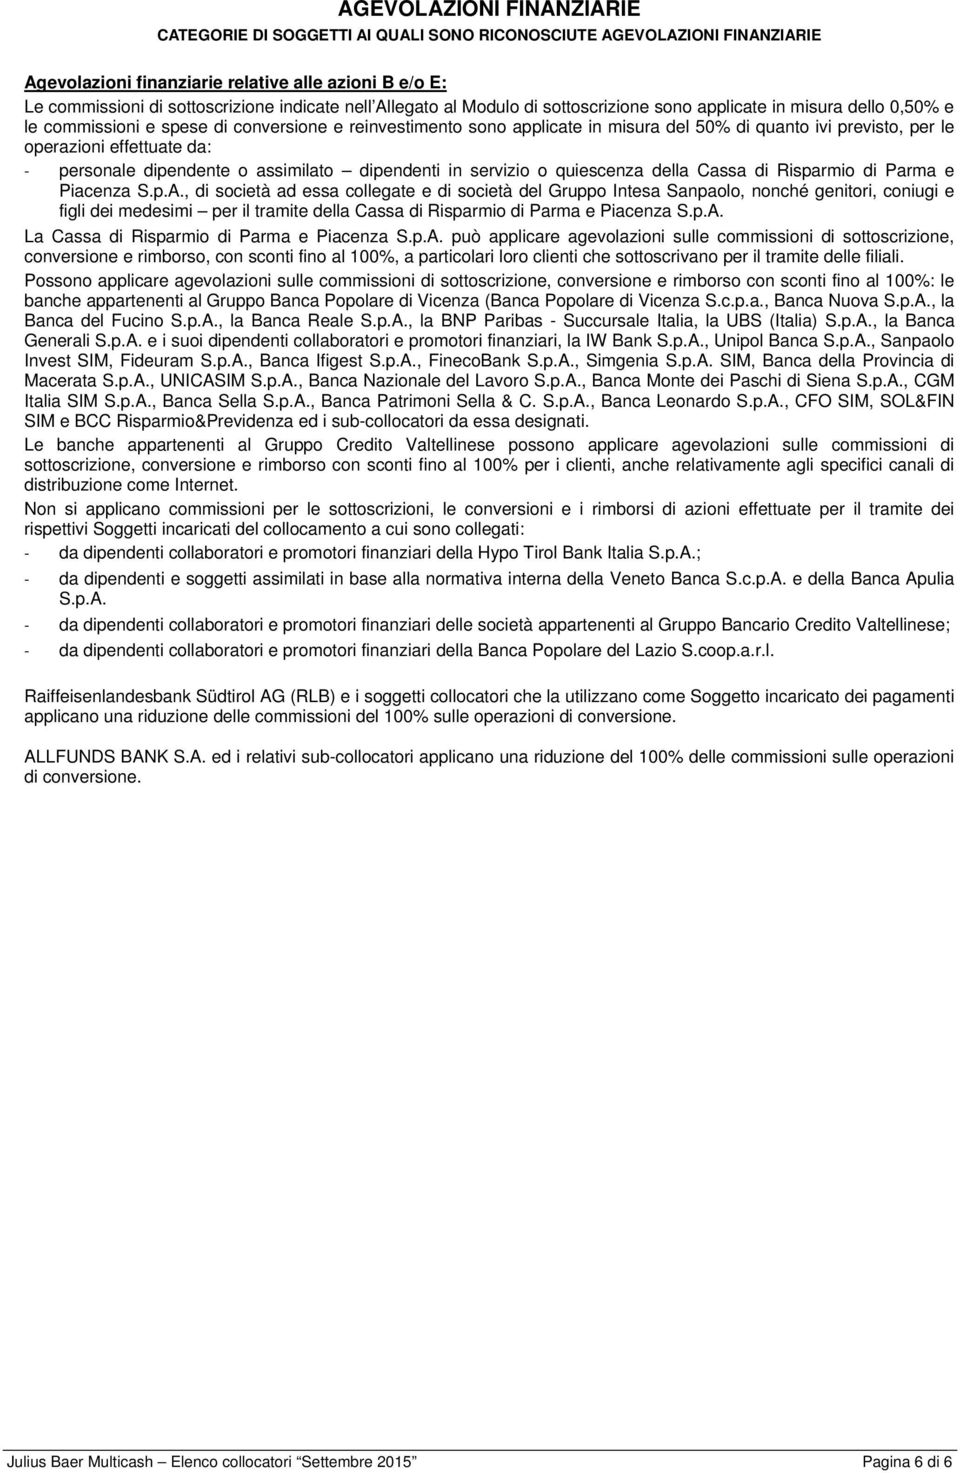 operazioni effettuate da: - personale dipendente o assimilato dipendenti in servizio o quiescenza della Cassa di Risparmio di Parma e Piacenza S.p.A.